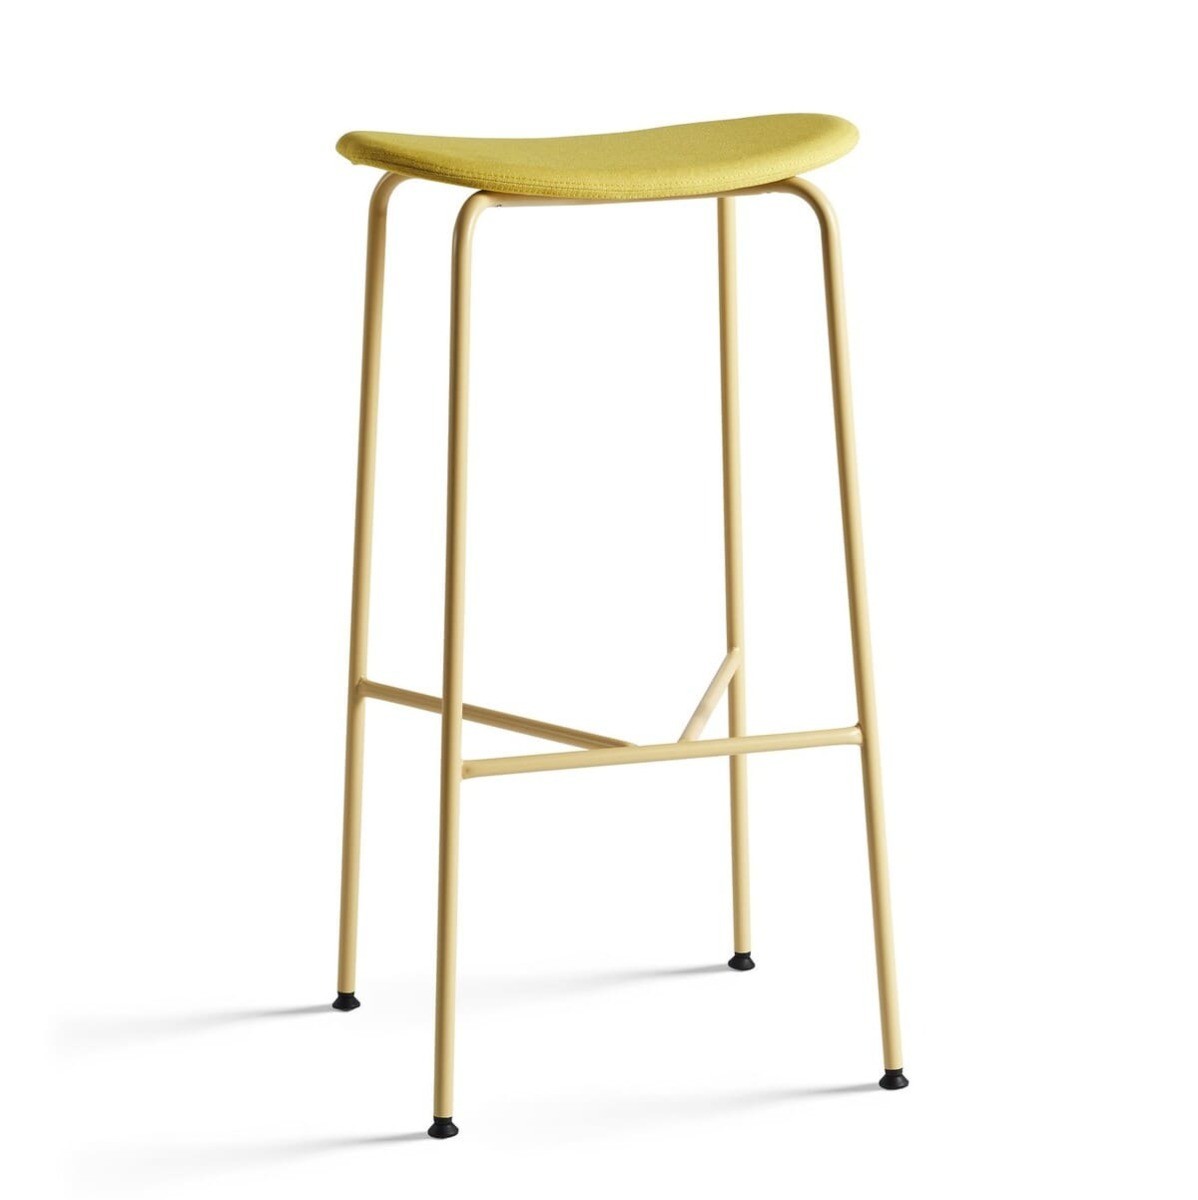 Tabouret de bar HODEI, avec un design 100% jaune : piètement en métal et assise tapissée.